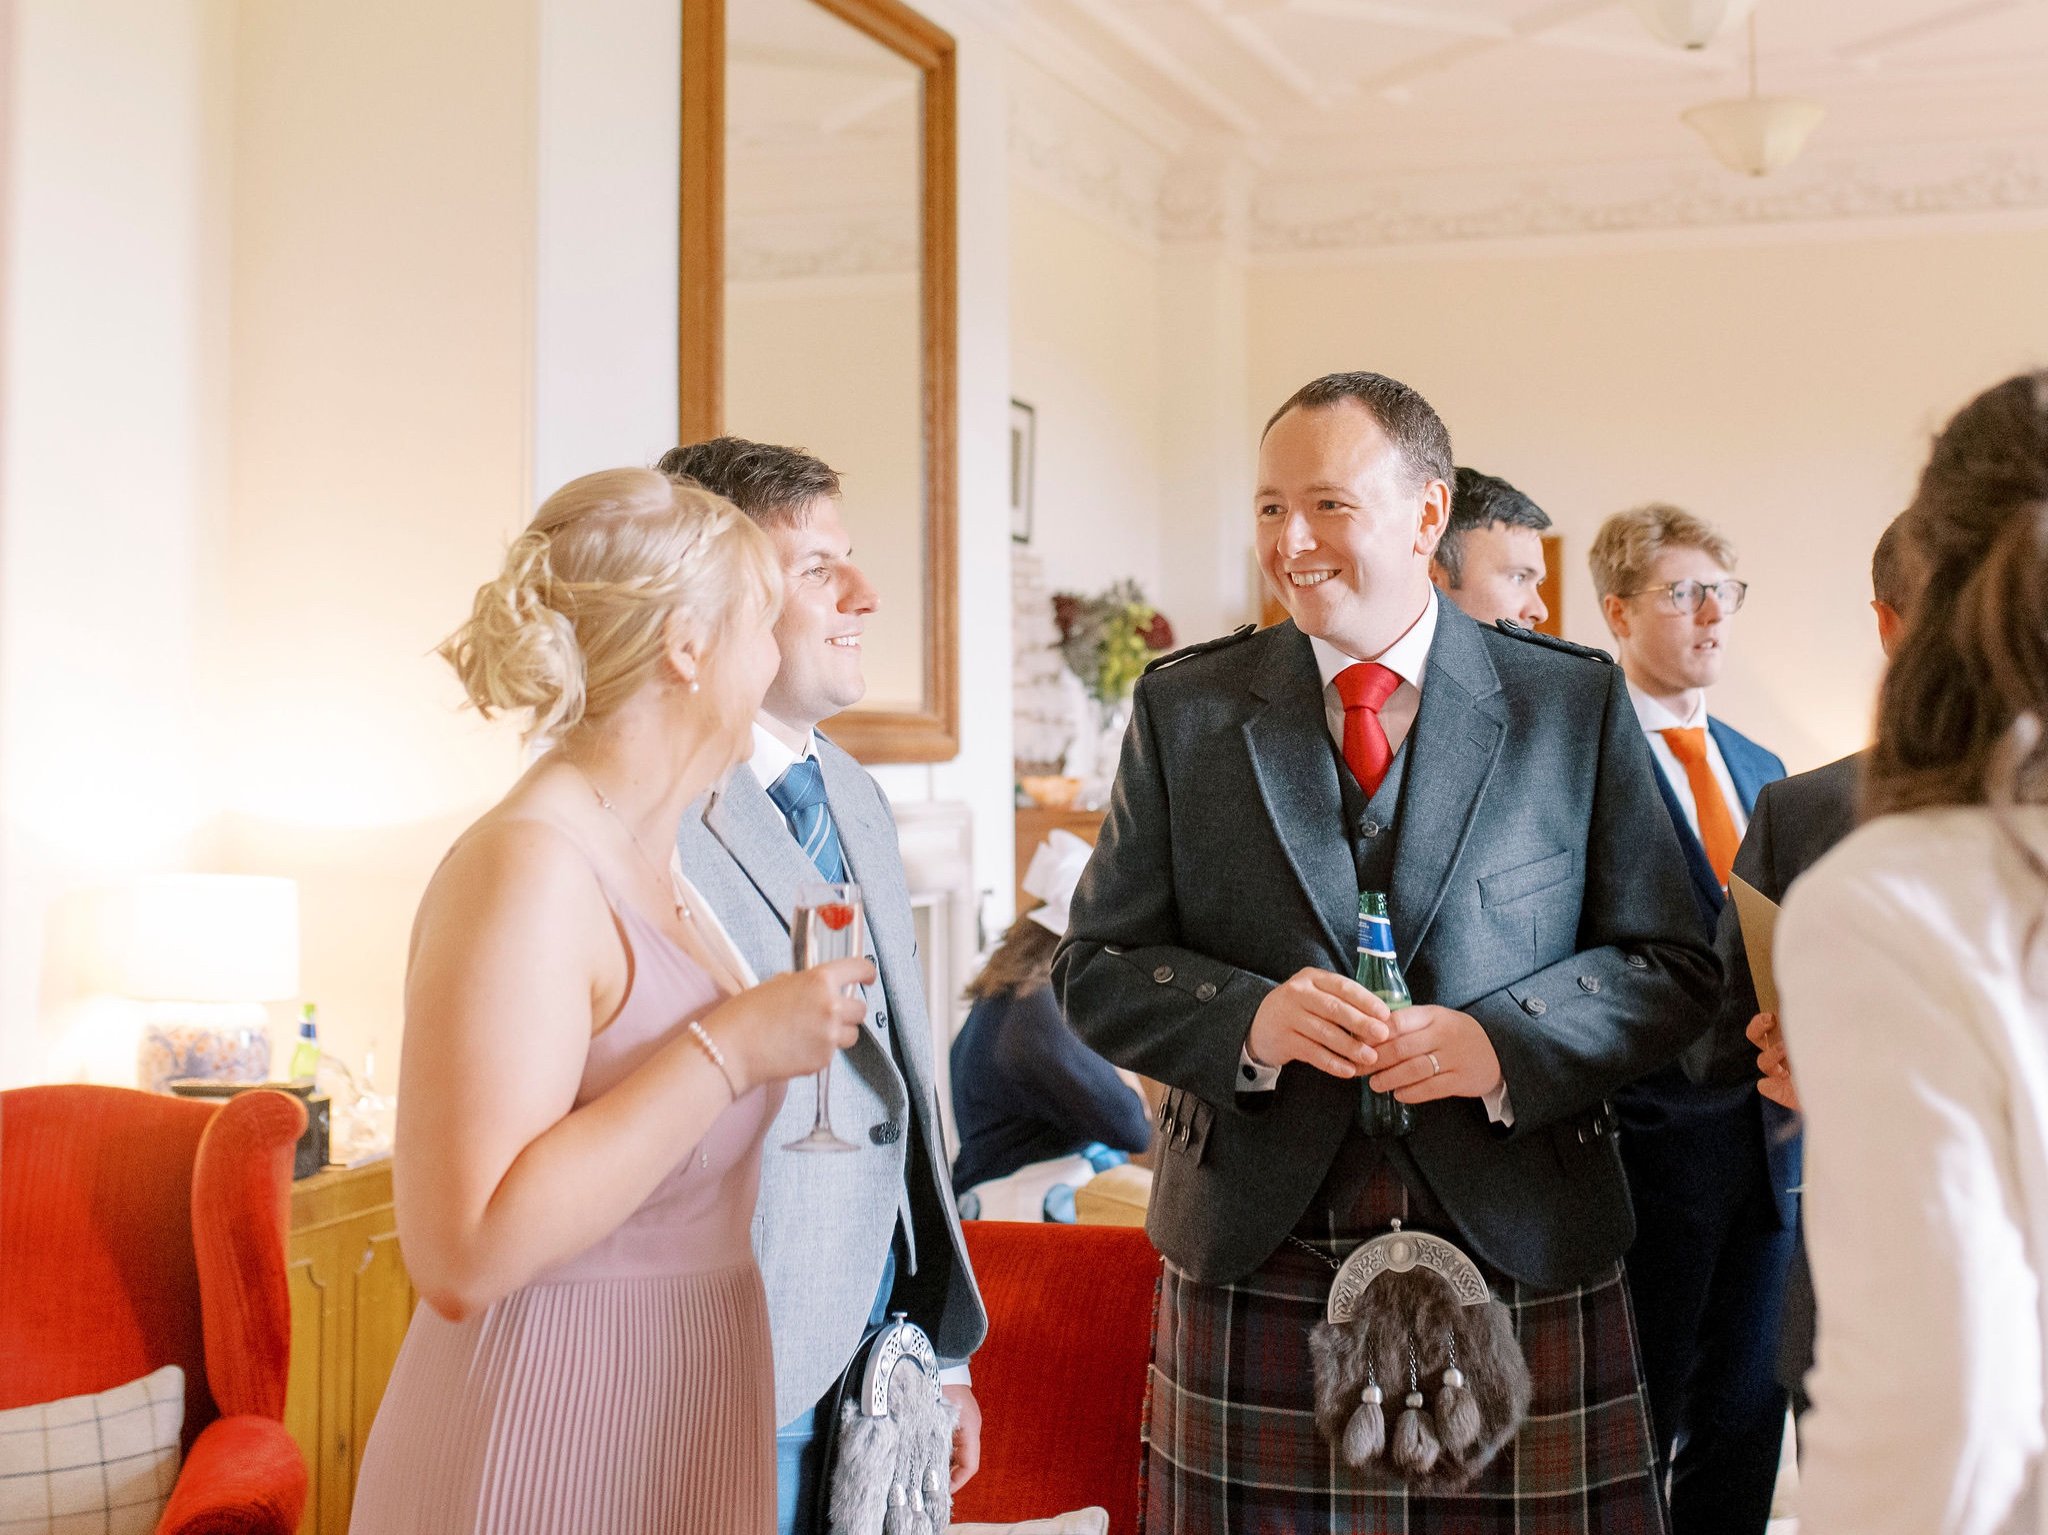 45_springkell-house-wedding-photographer-dumfries-scotland-wedding-guests-kilt.jpg